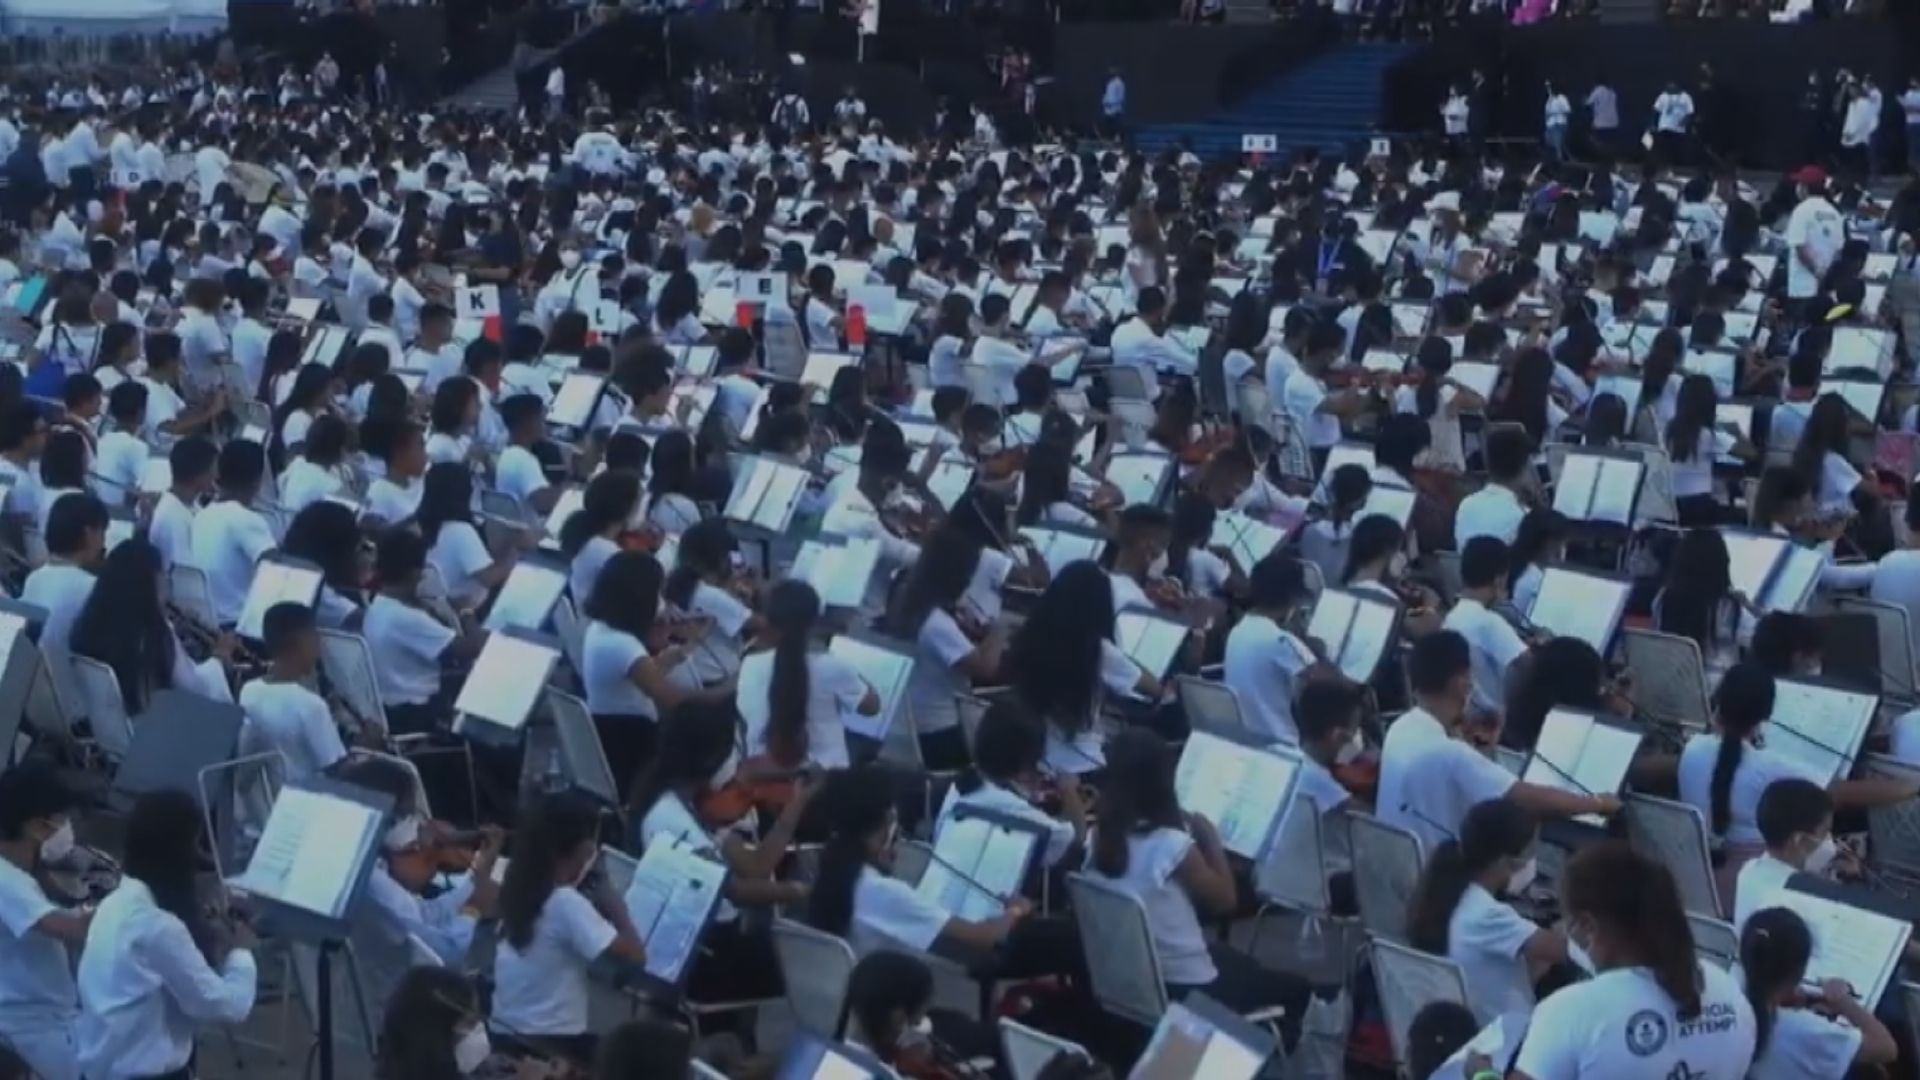 【環球薈報】委內瑞拉管弦樂團8573人合奏破世界紀錄